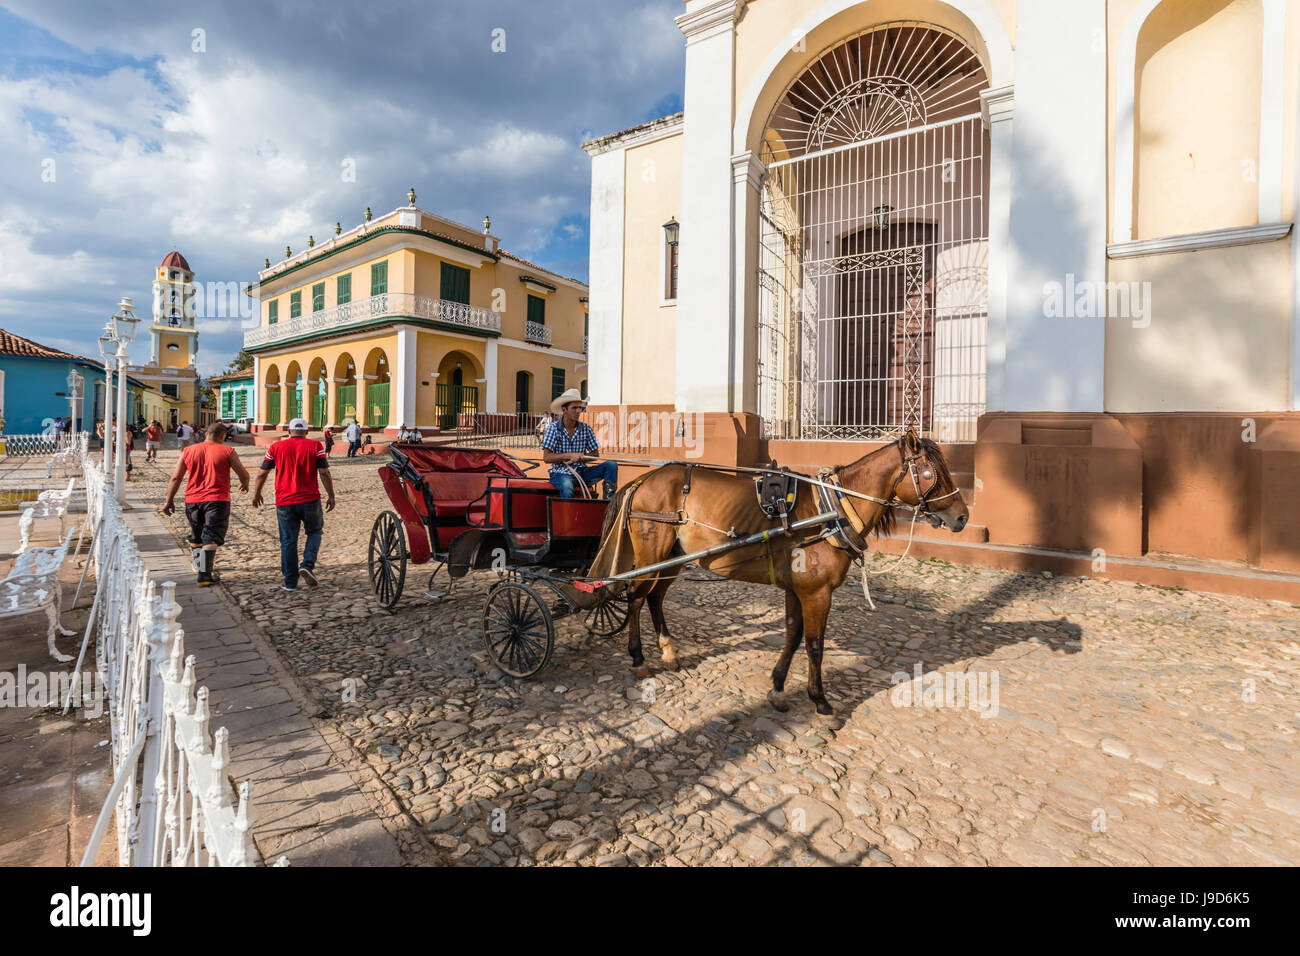 Ein Pferdefuhrwerk Volksmund Coche in Plaza Mayor, in der Stadt von Trinidad, UNESCO, Kuba, West Indies, Karibik Stockfoto